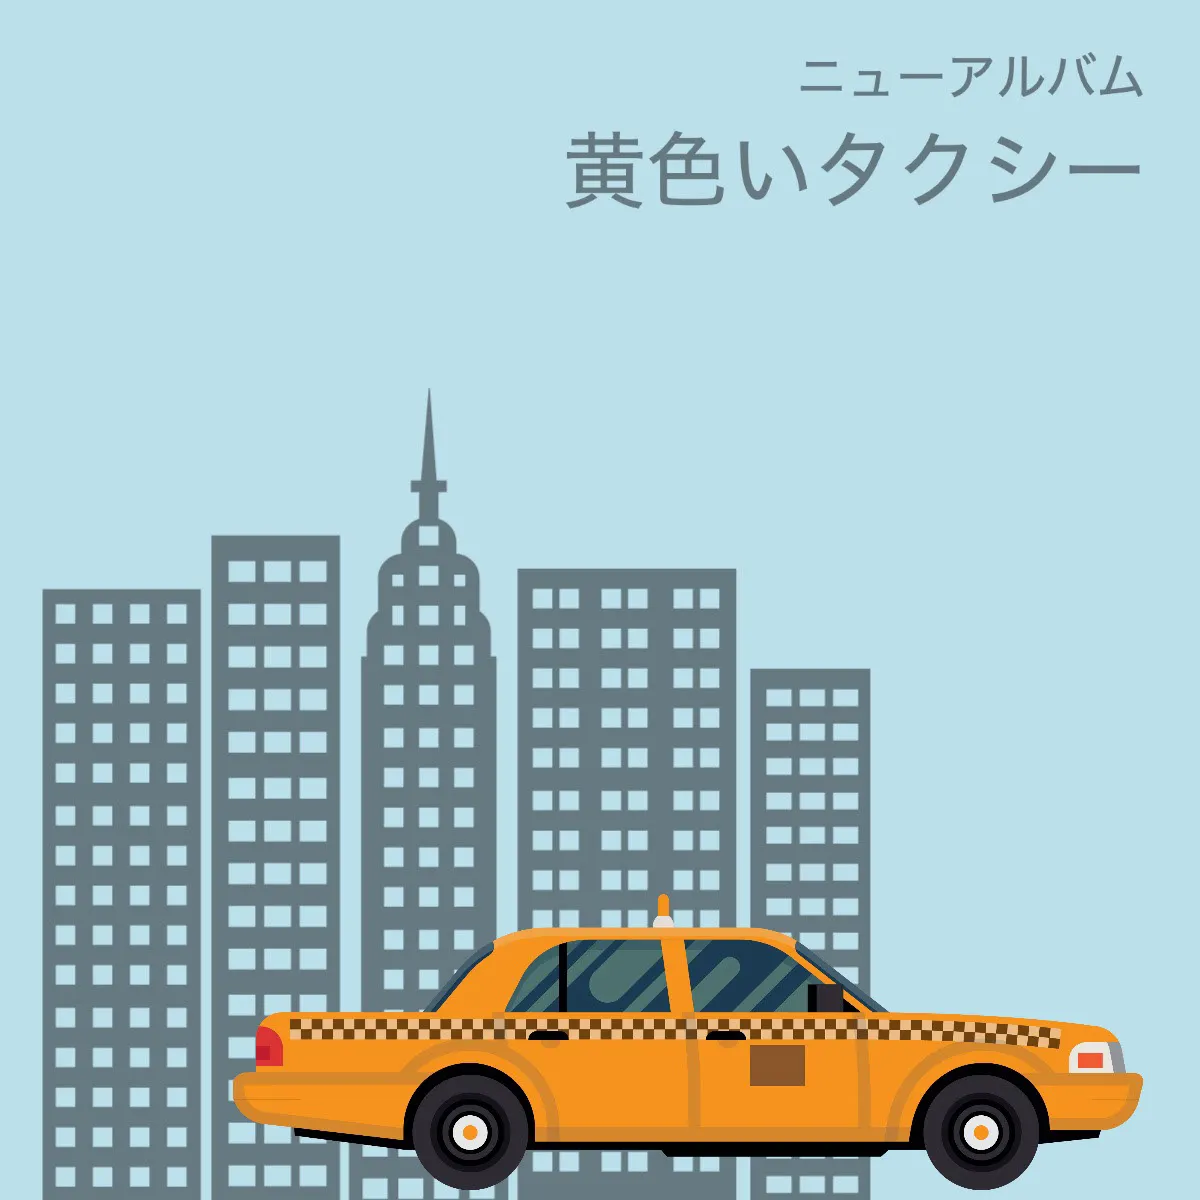 Yellow cab album cover